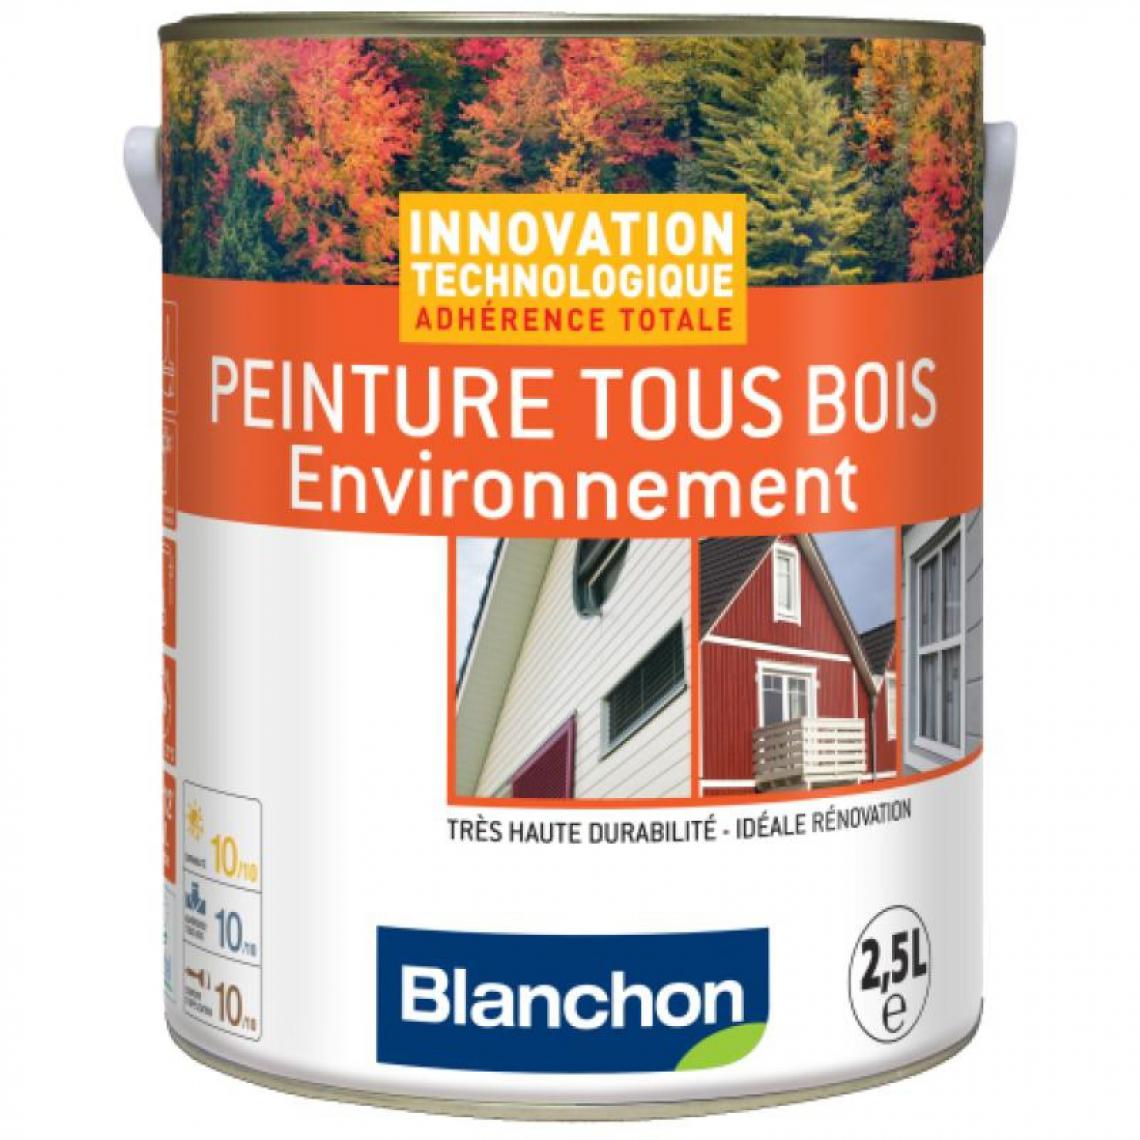 Blanchon - Peinture microporeuse hydrofuge Tous Bois Environnement, ivoire clair 1015 - Produit de finition pour bois